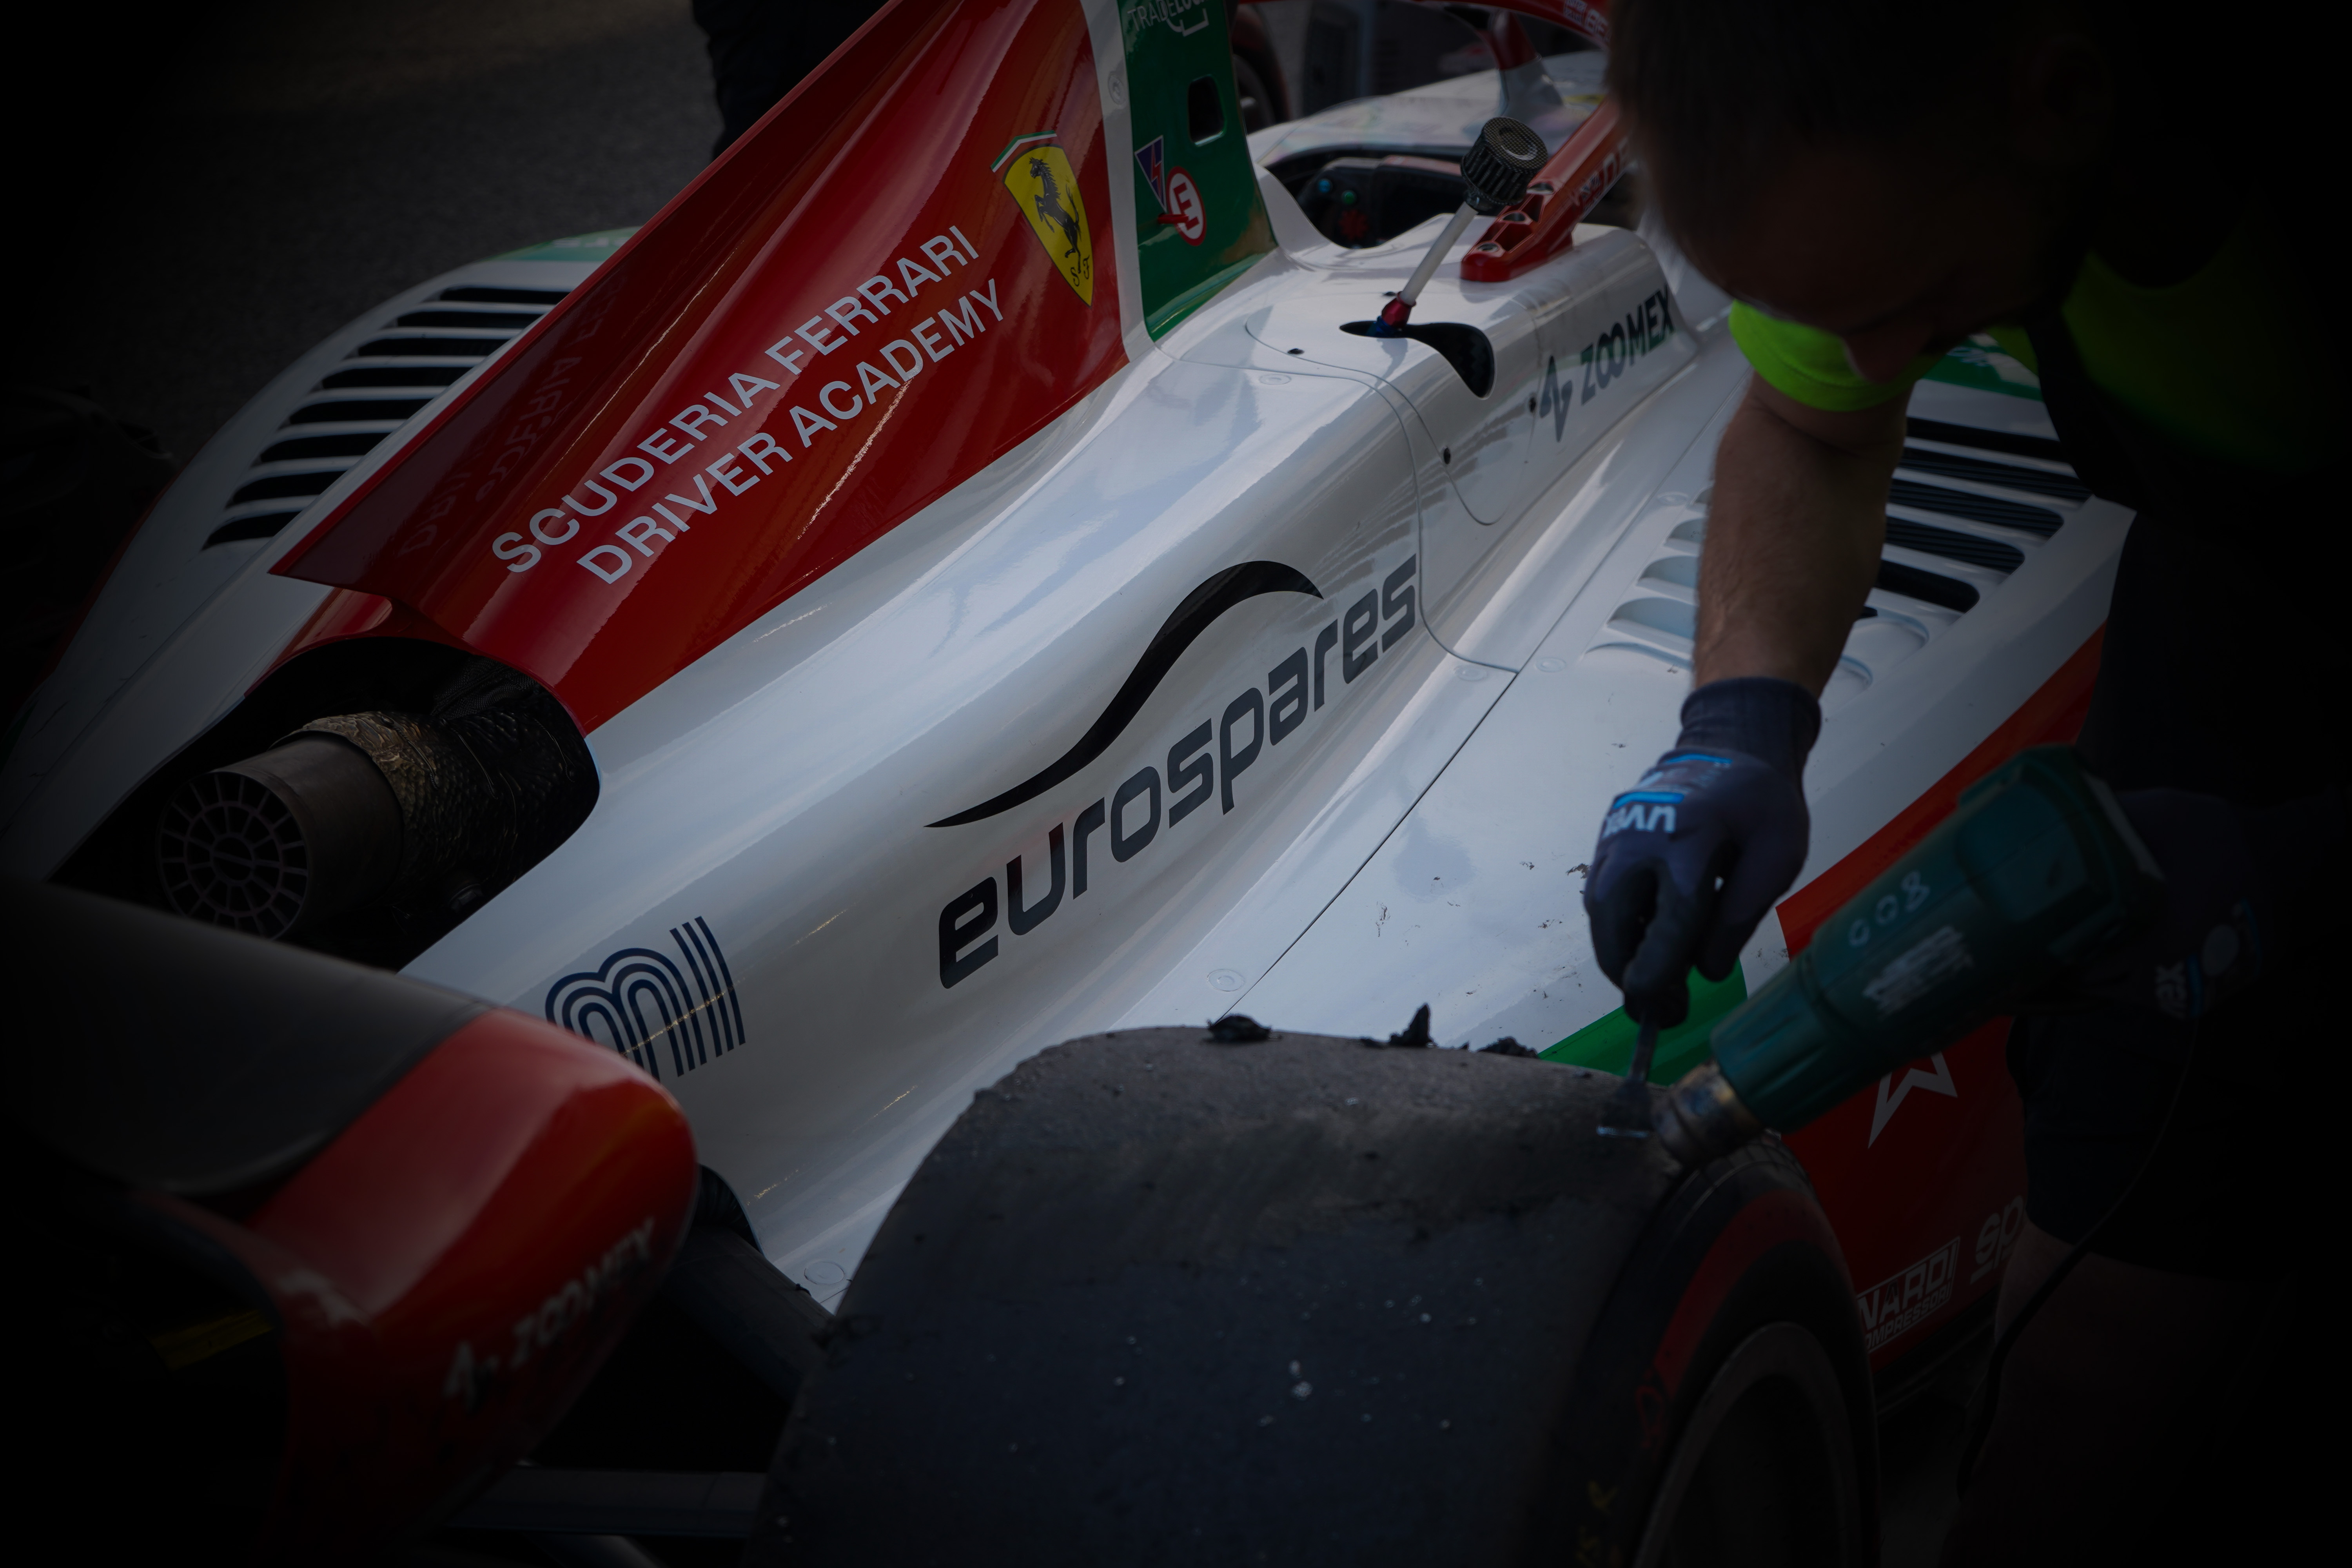 2024 Prema Formula 2 race car featuring the Eurospares sponsor logo.